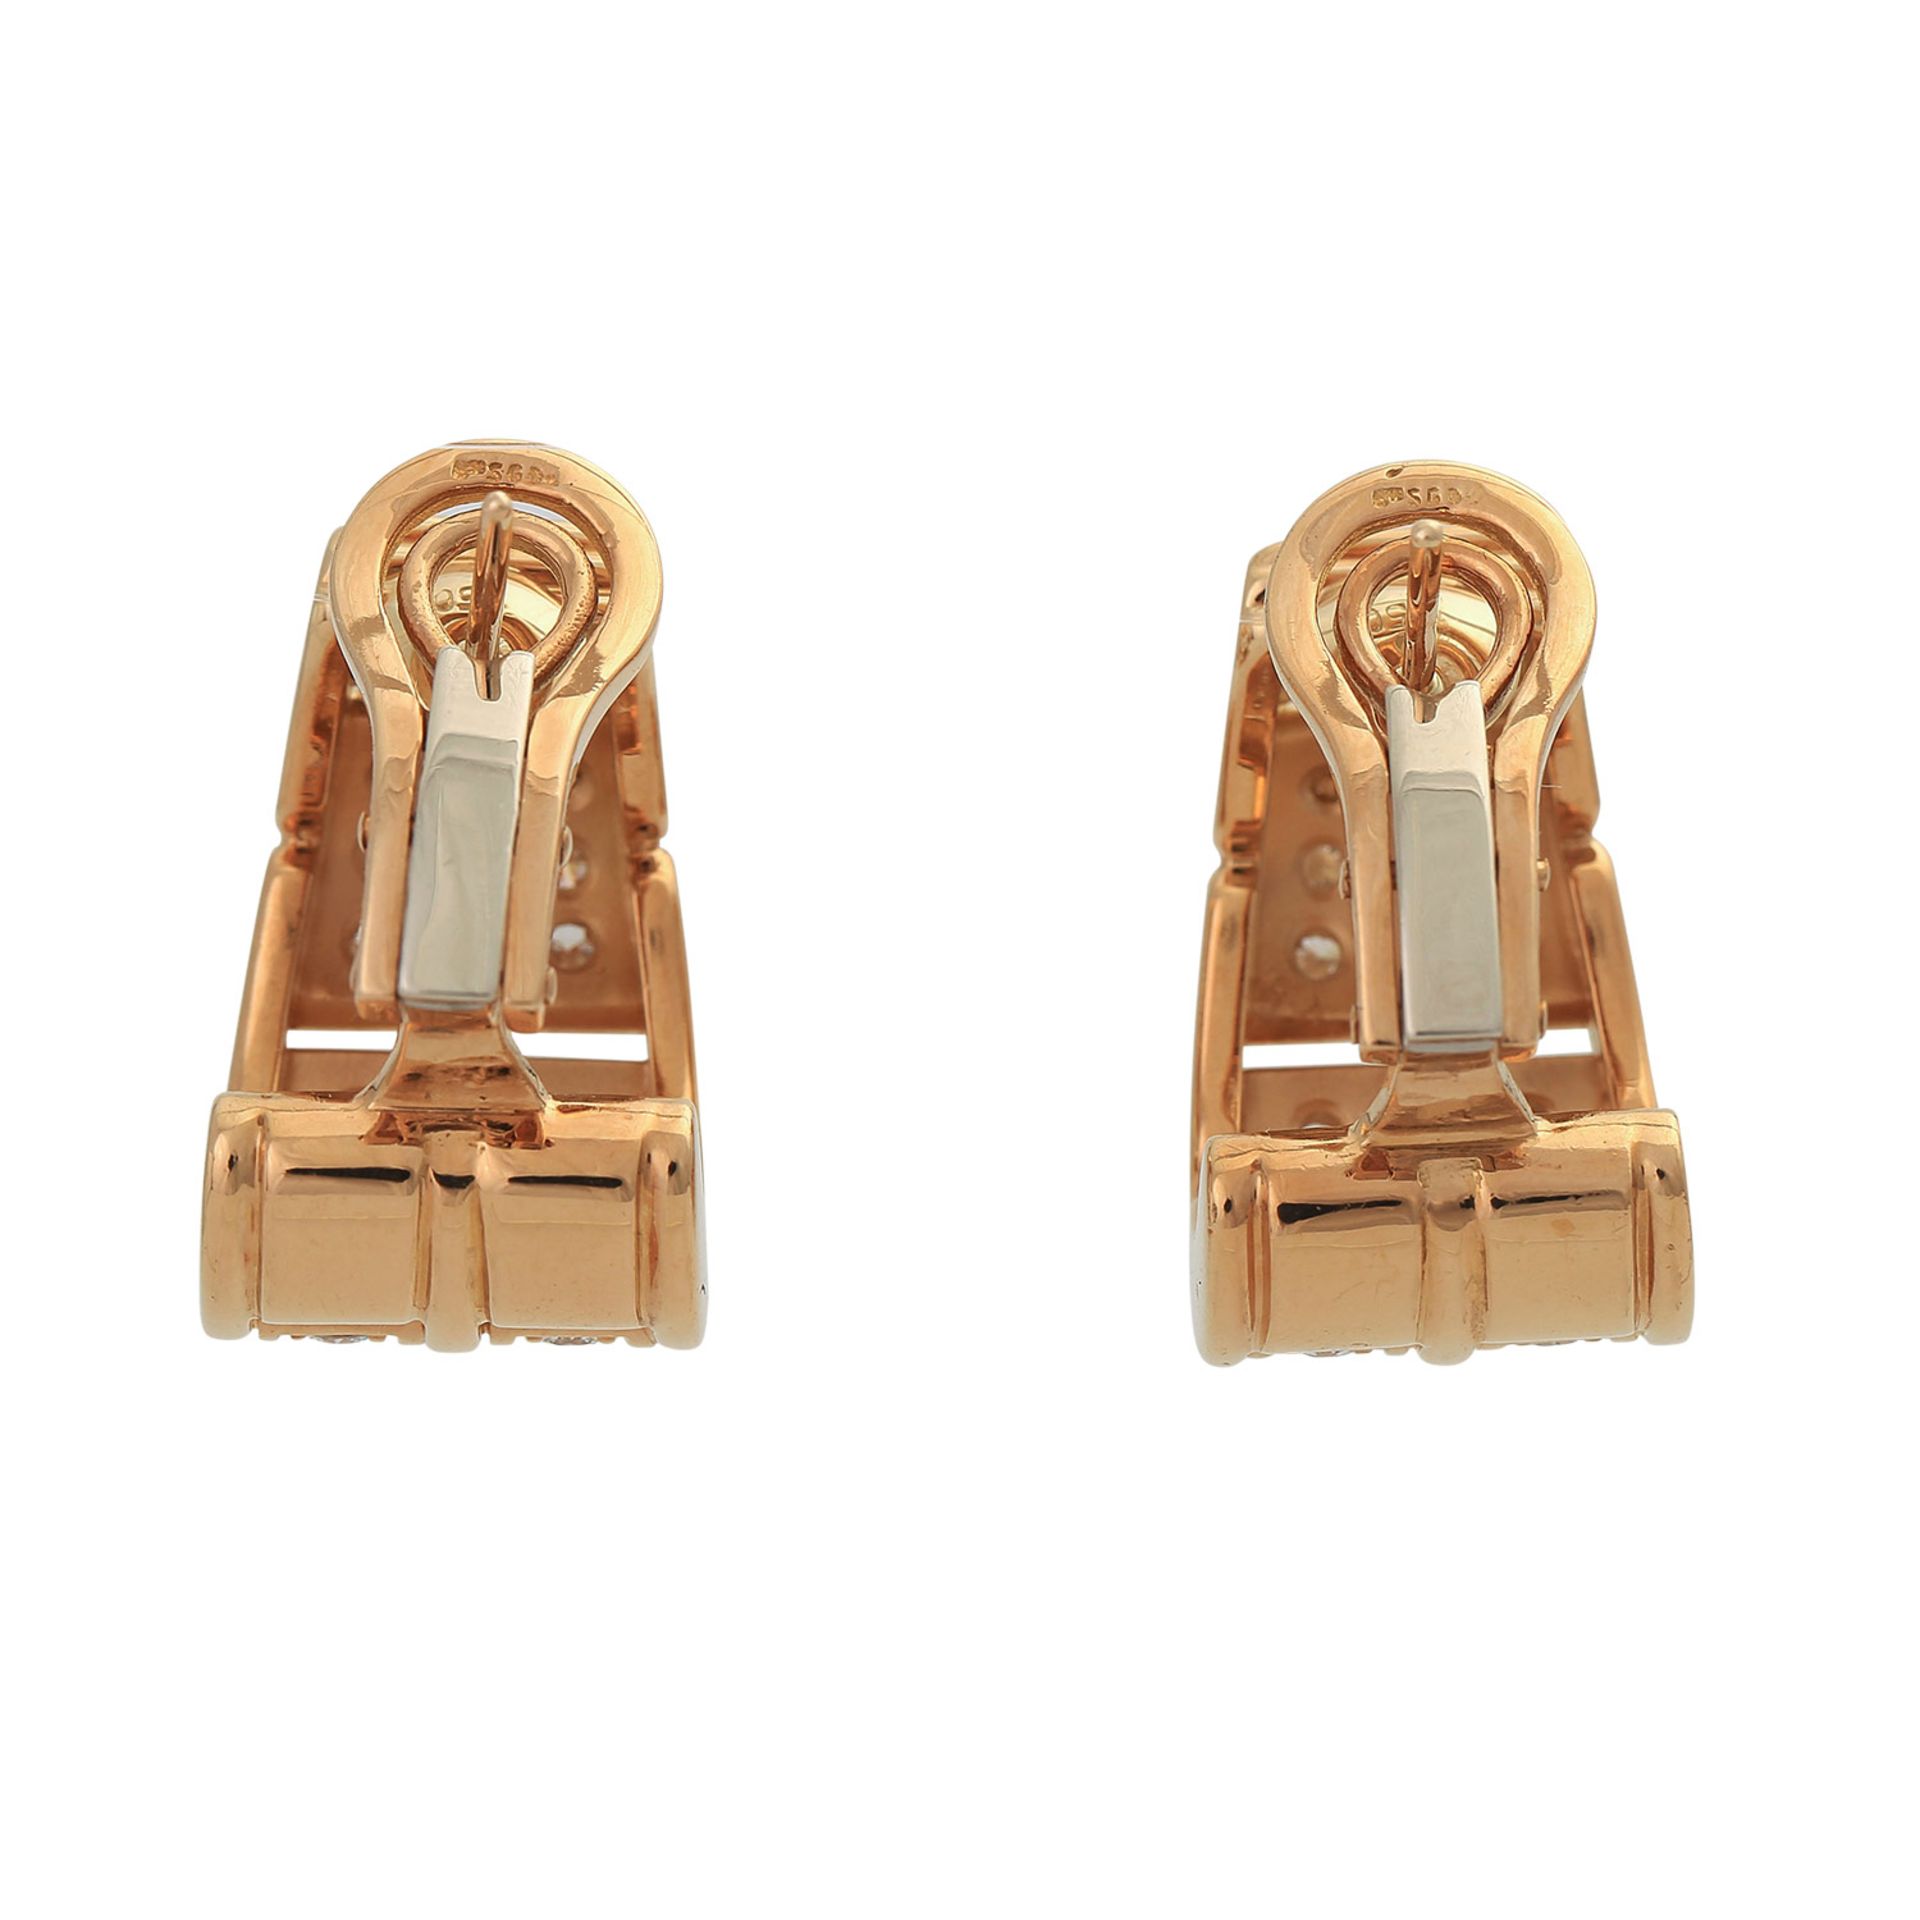 Paar Ohrringe mit Brillantenvon zus. ca. 1,3 ct, FW (G)/VVS, GG, L: ca. 2,2 cm, Stecker mit Clips, - Image 4 of 5